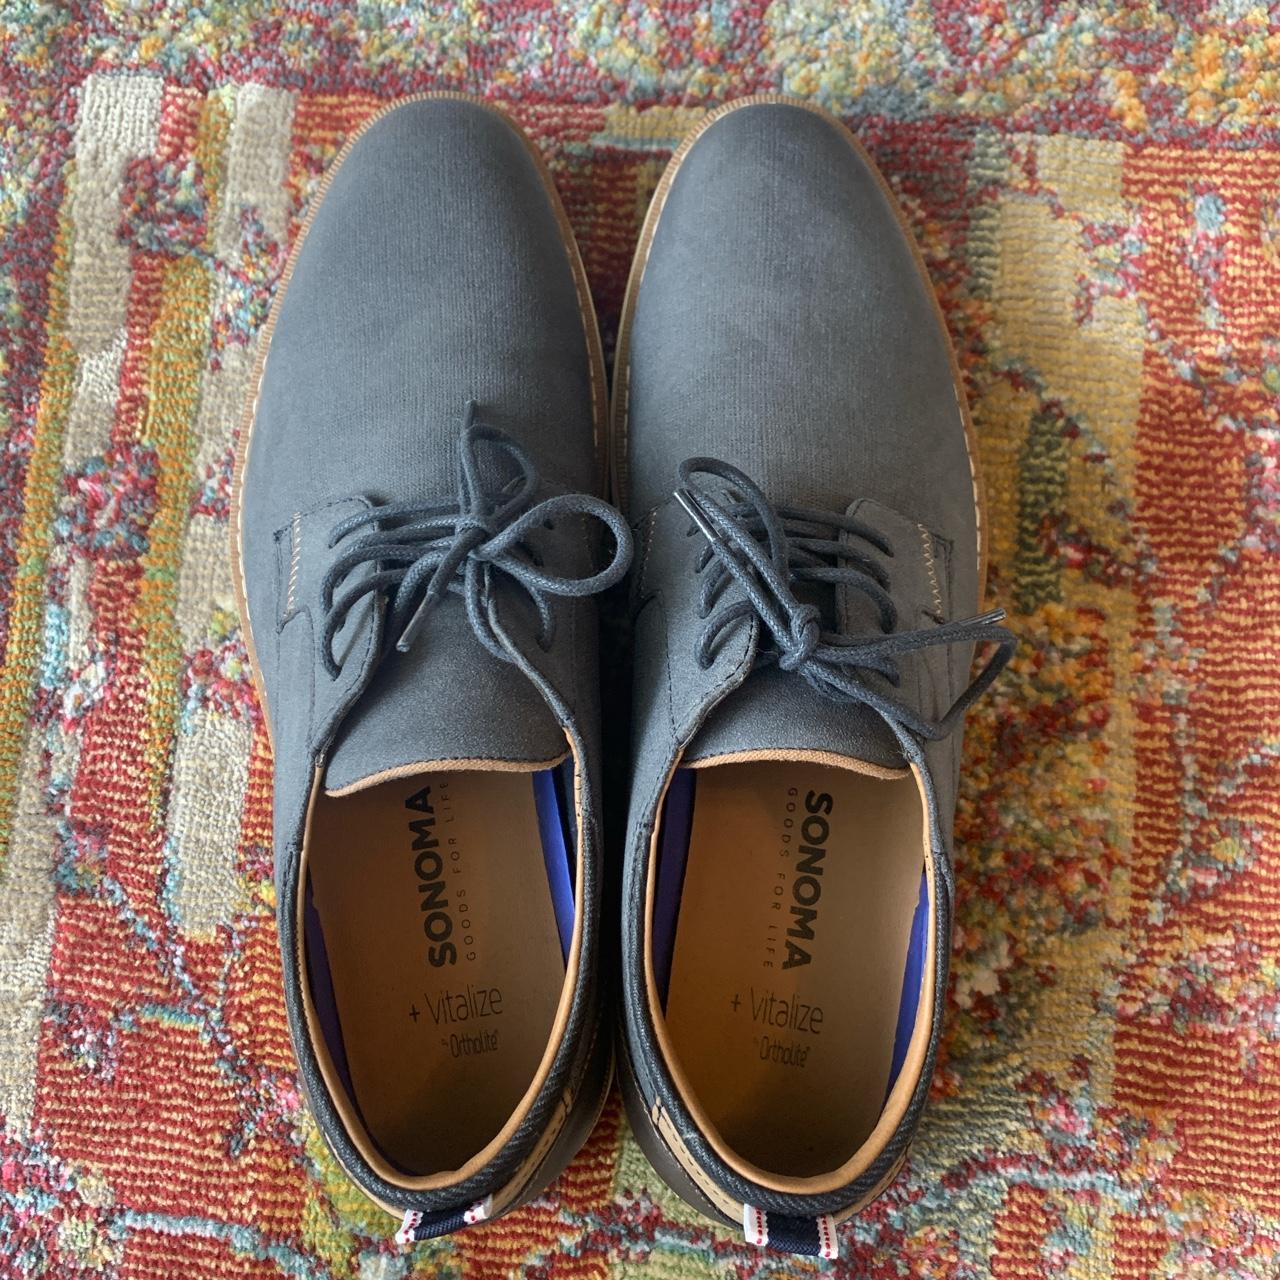 Sonoma - Oxford-style Shoe - Size 11.5 ⭐️excellent - Depop